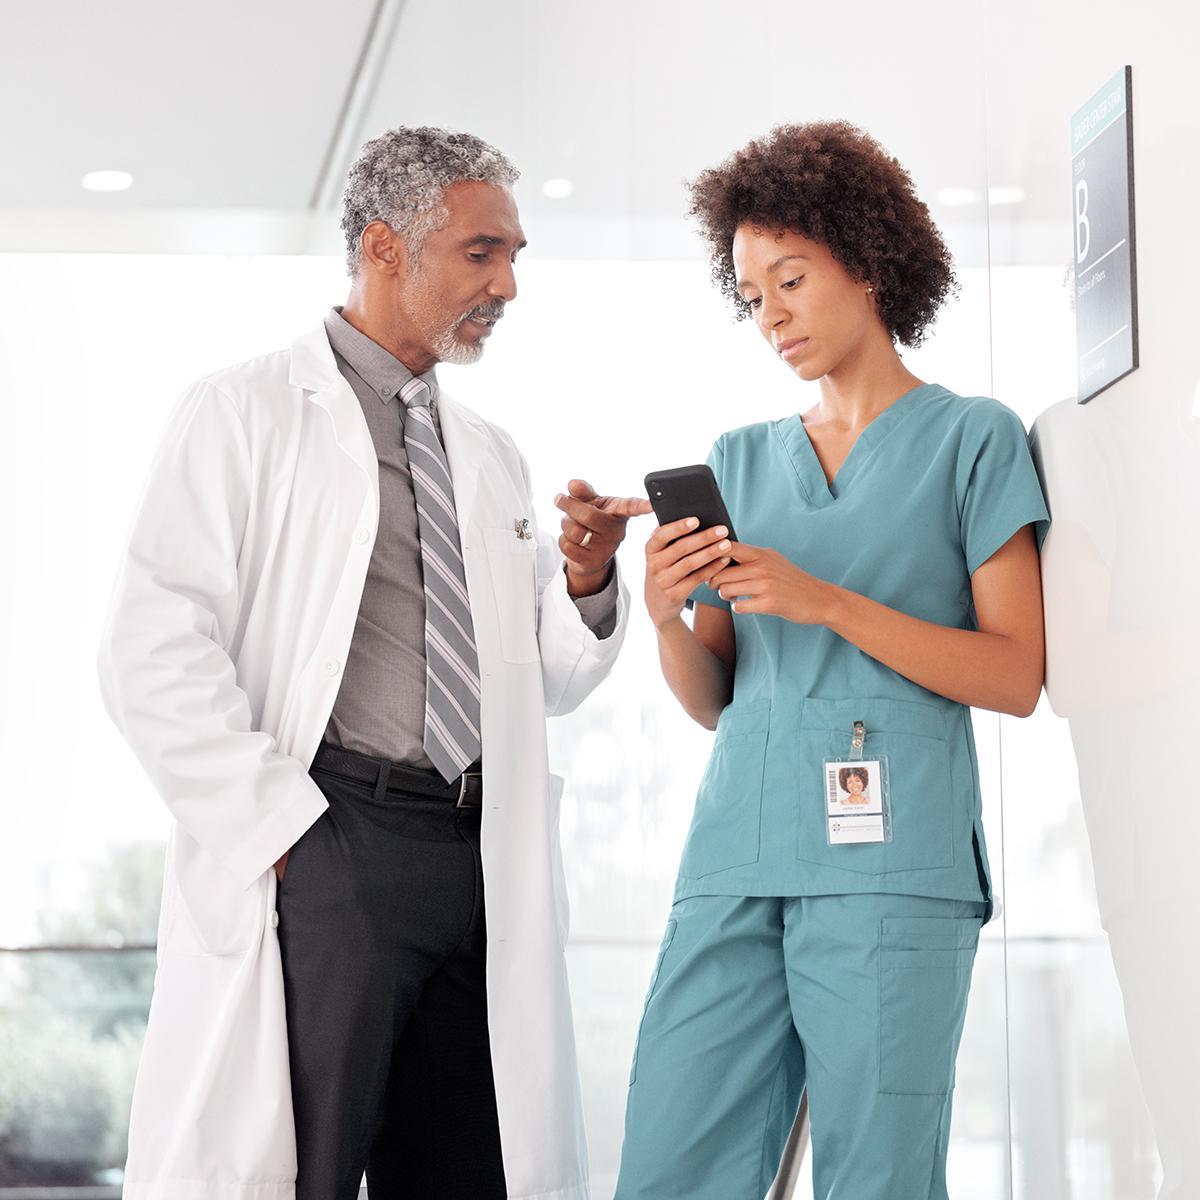 Médecin et infirmière qui utilisent un téléphone intelligent